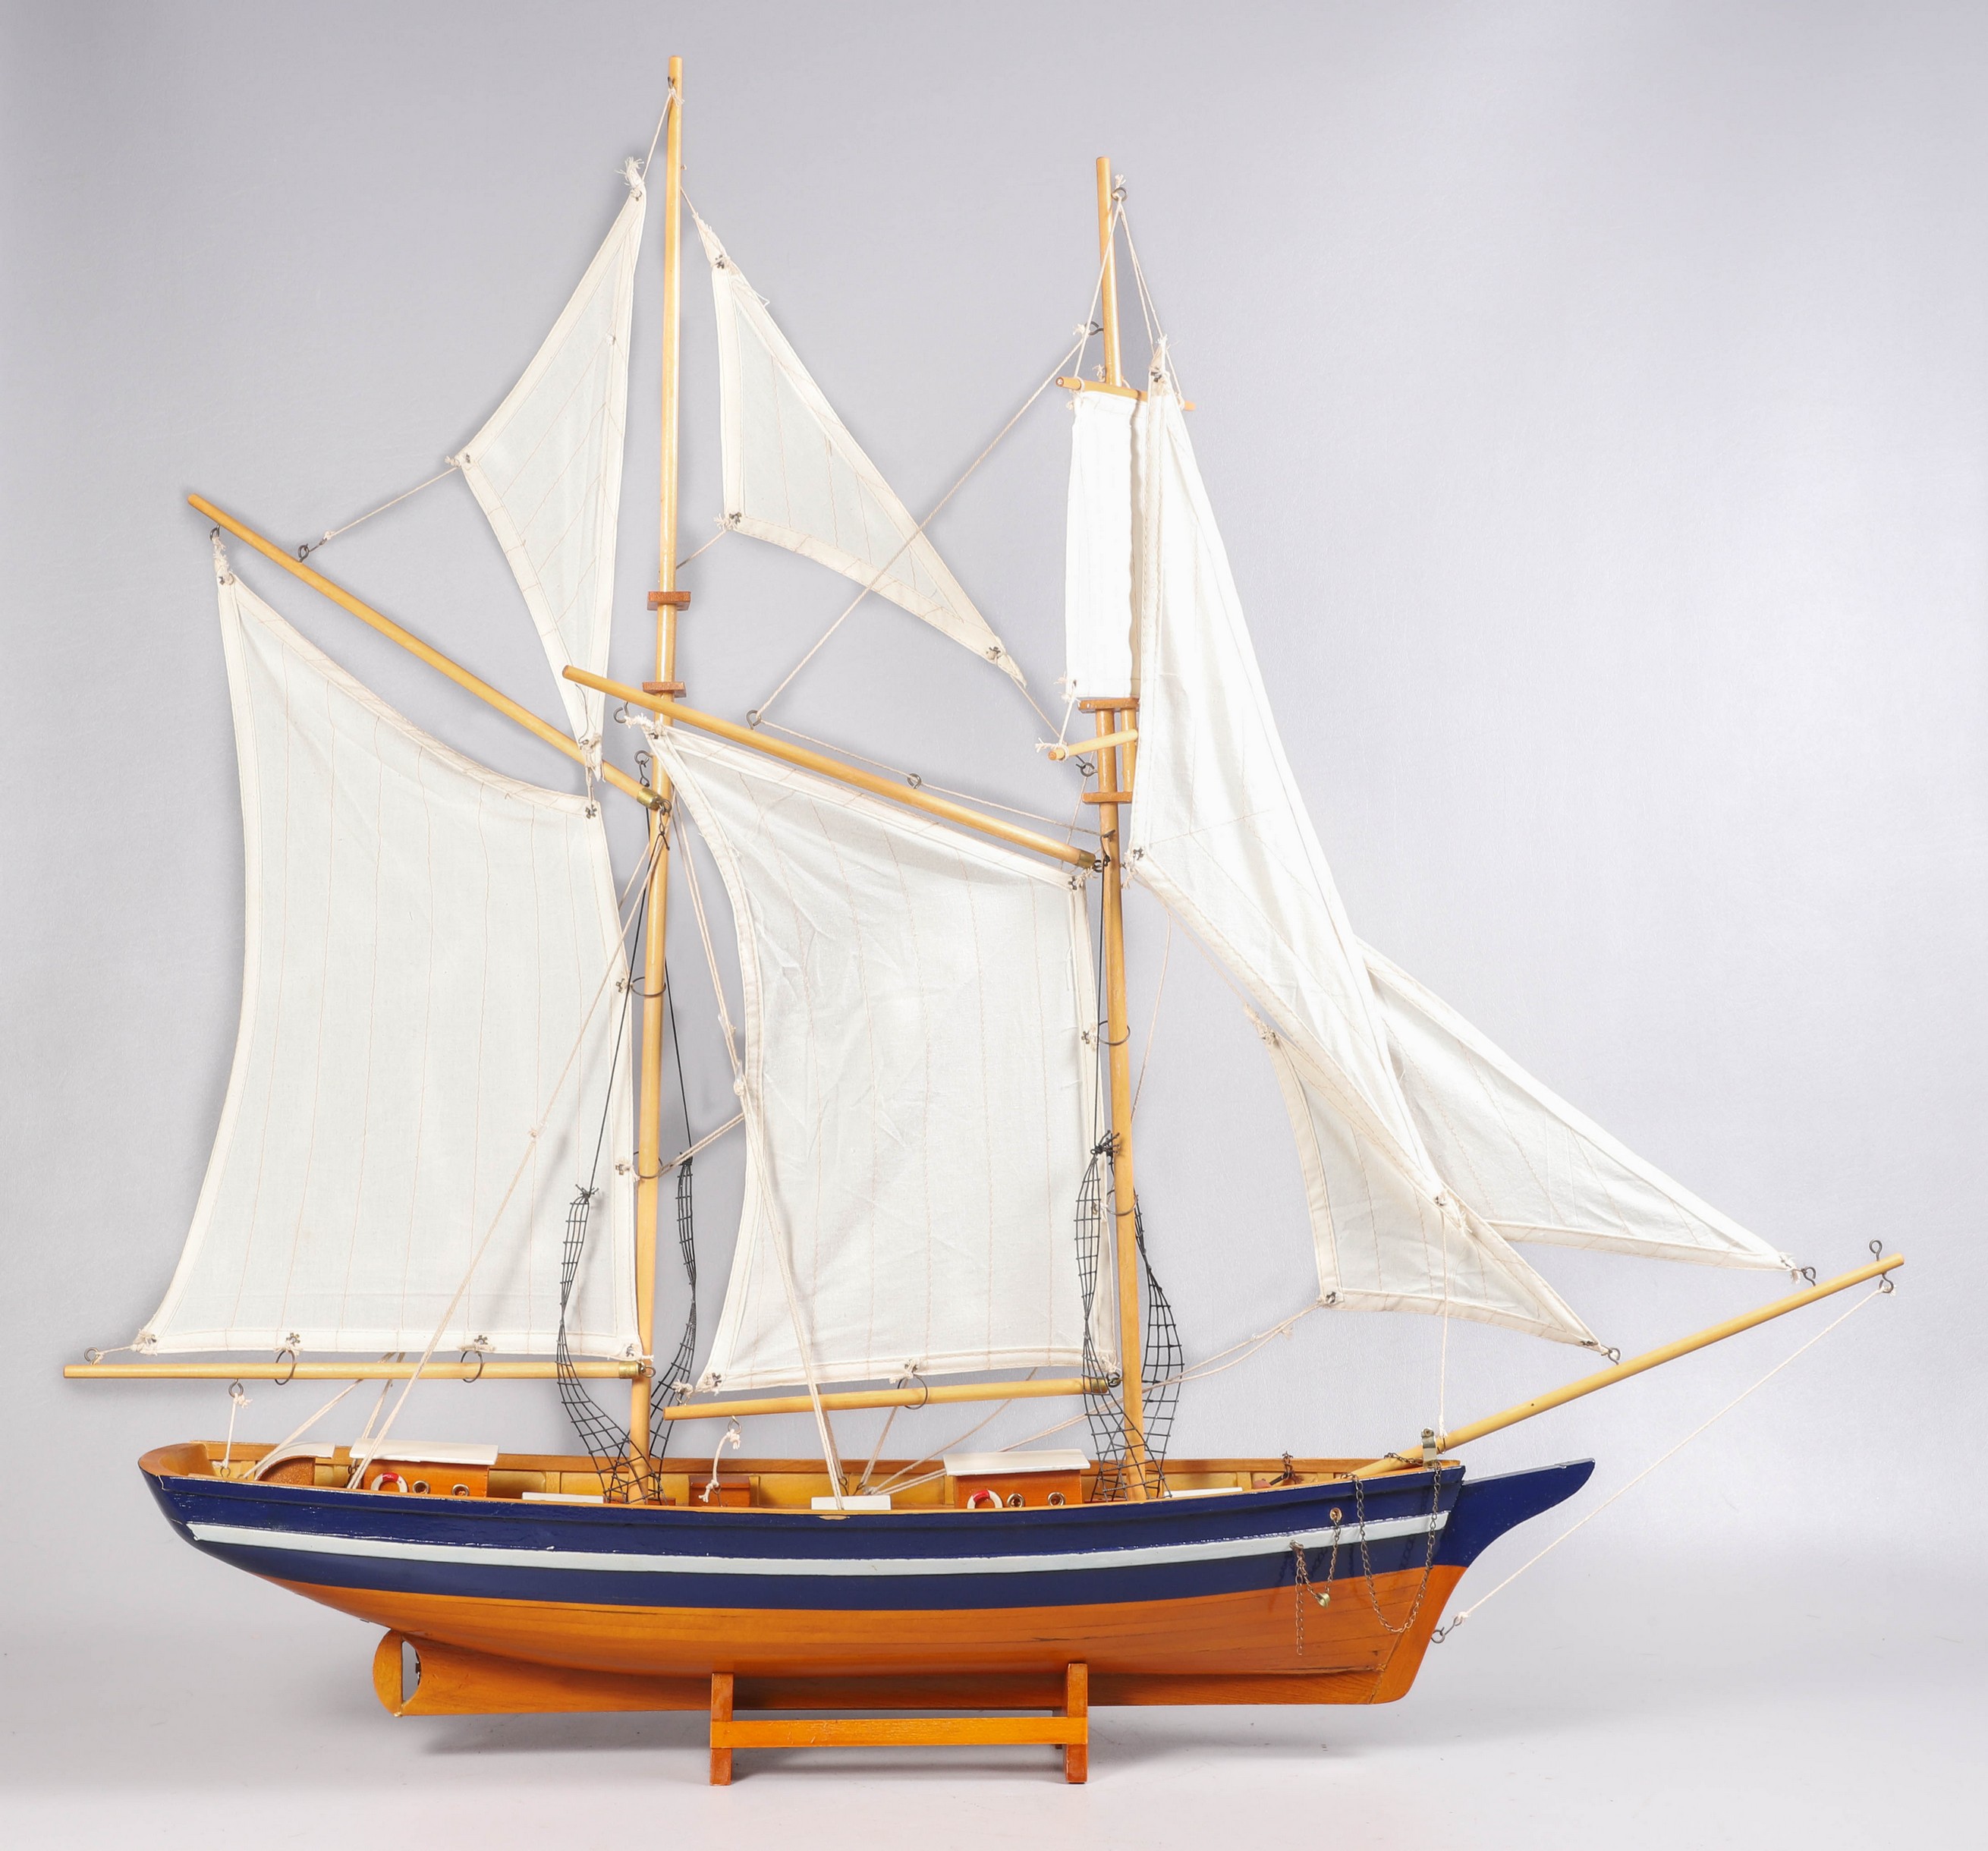 Wood sailing ship model, muslin sails,